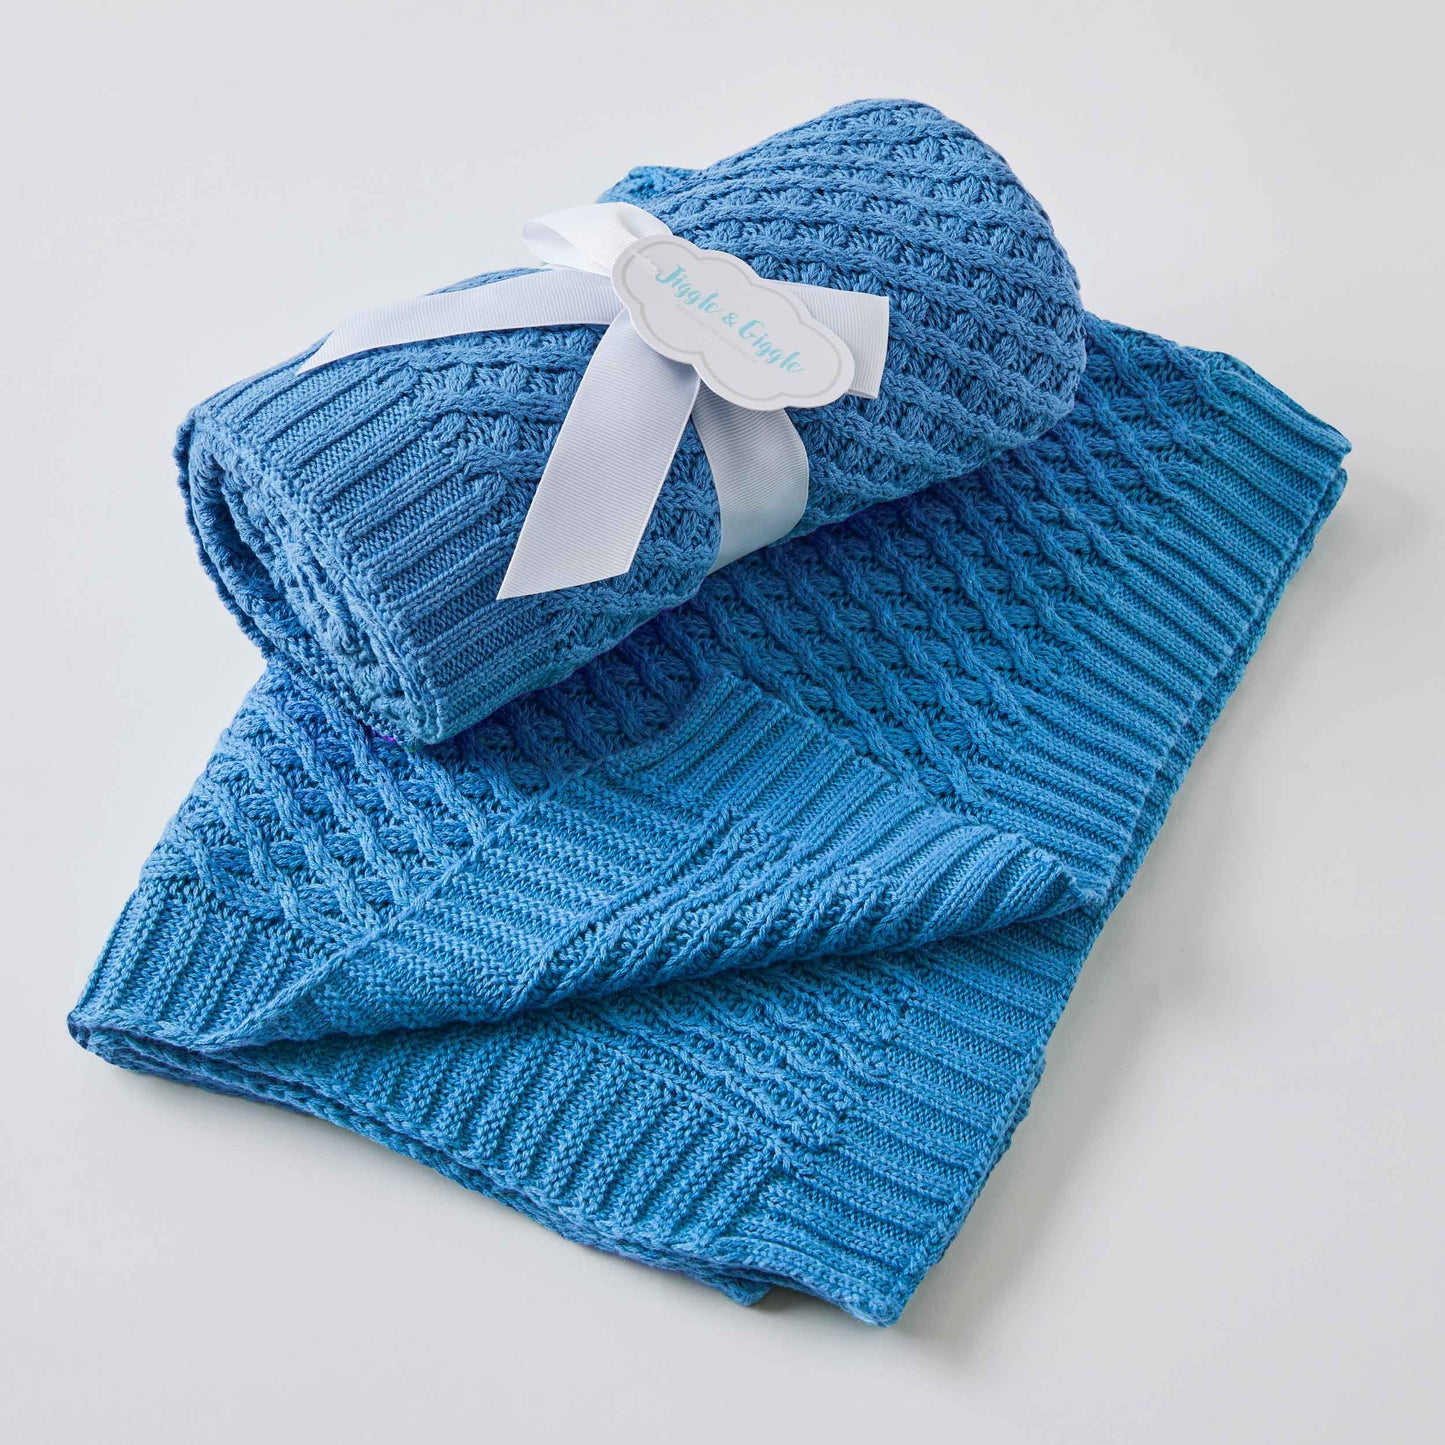 Jiggle & Giggle Harbour Blue Basket Weave Knit Blanket